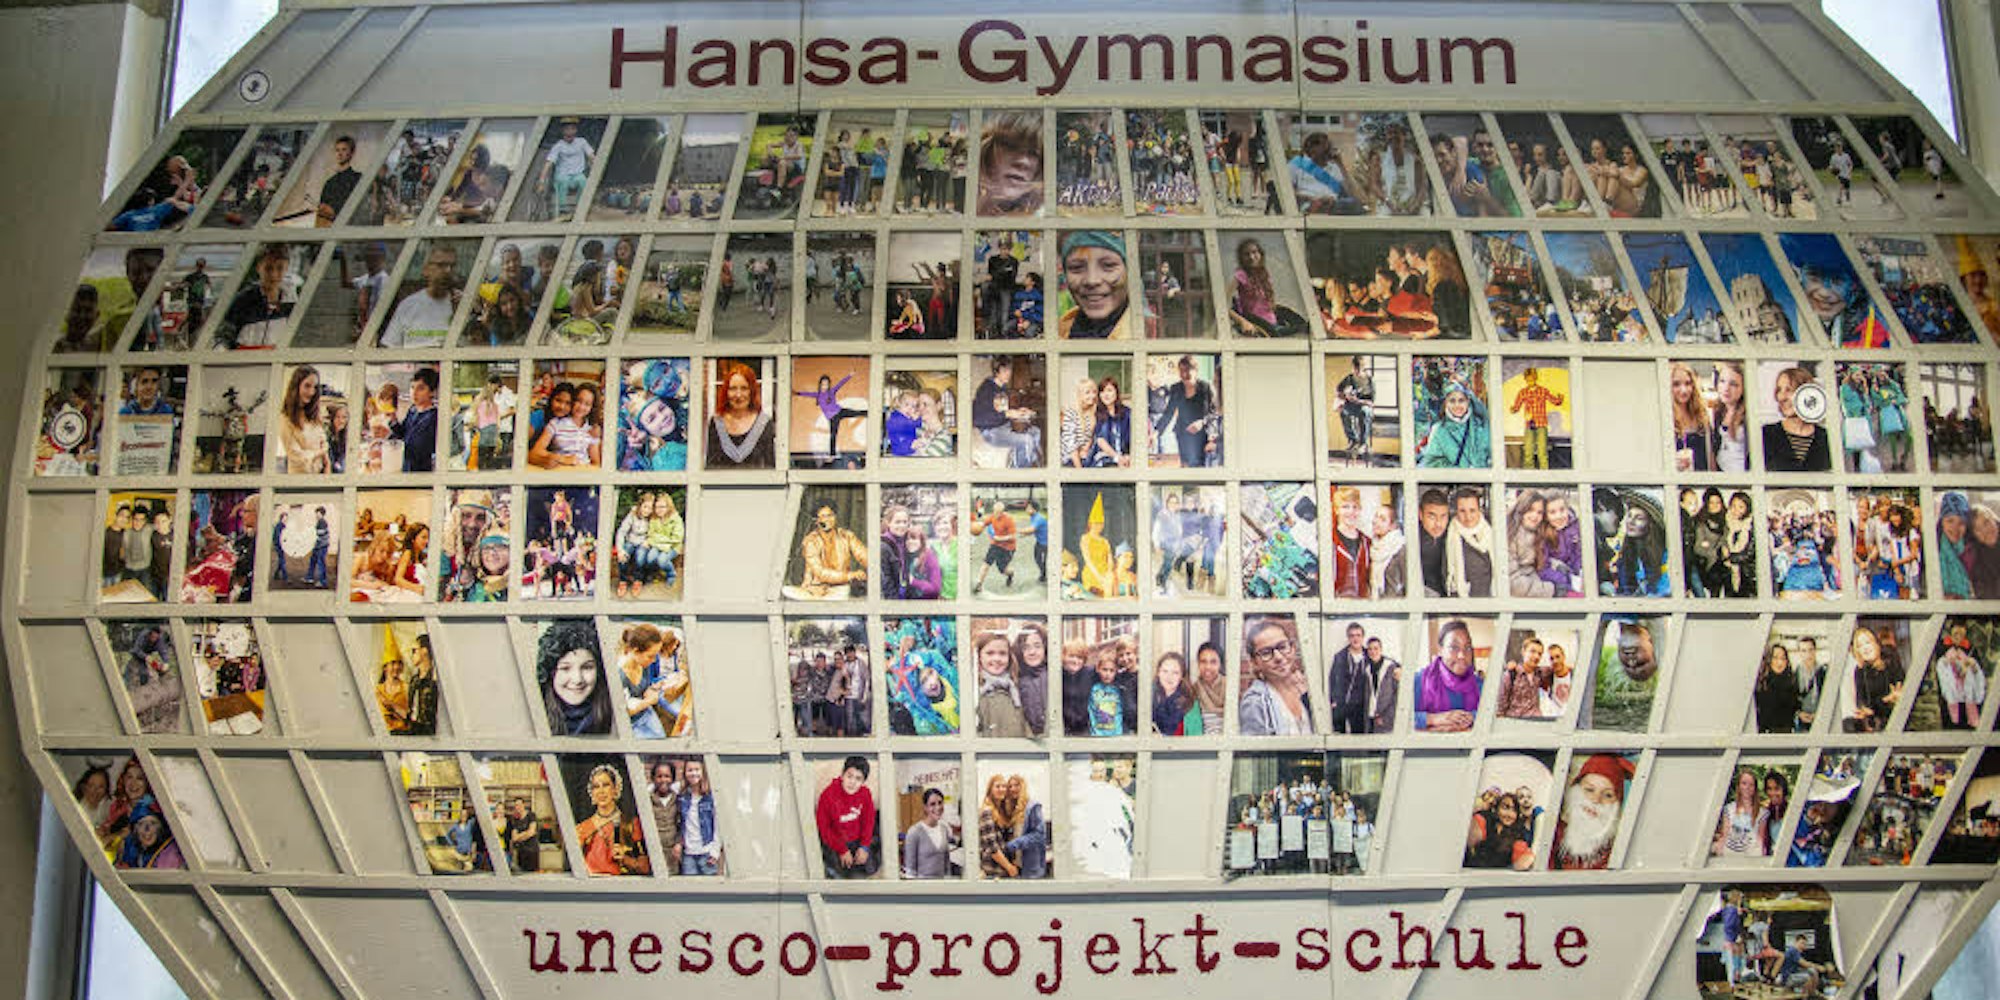 Buntes Jubiläum: Seit 25 Jahren ist das Hansa-Gymnasium Unesco-Schule. Gefeiert wird allerdings unter schwierigen Verhältnissen.